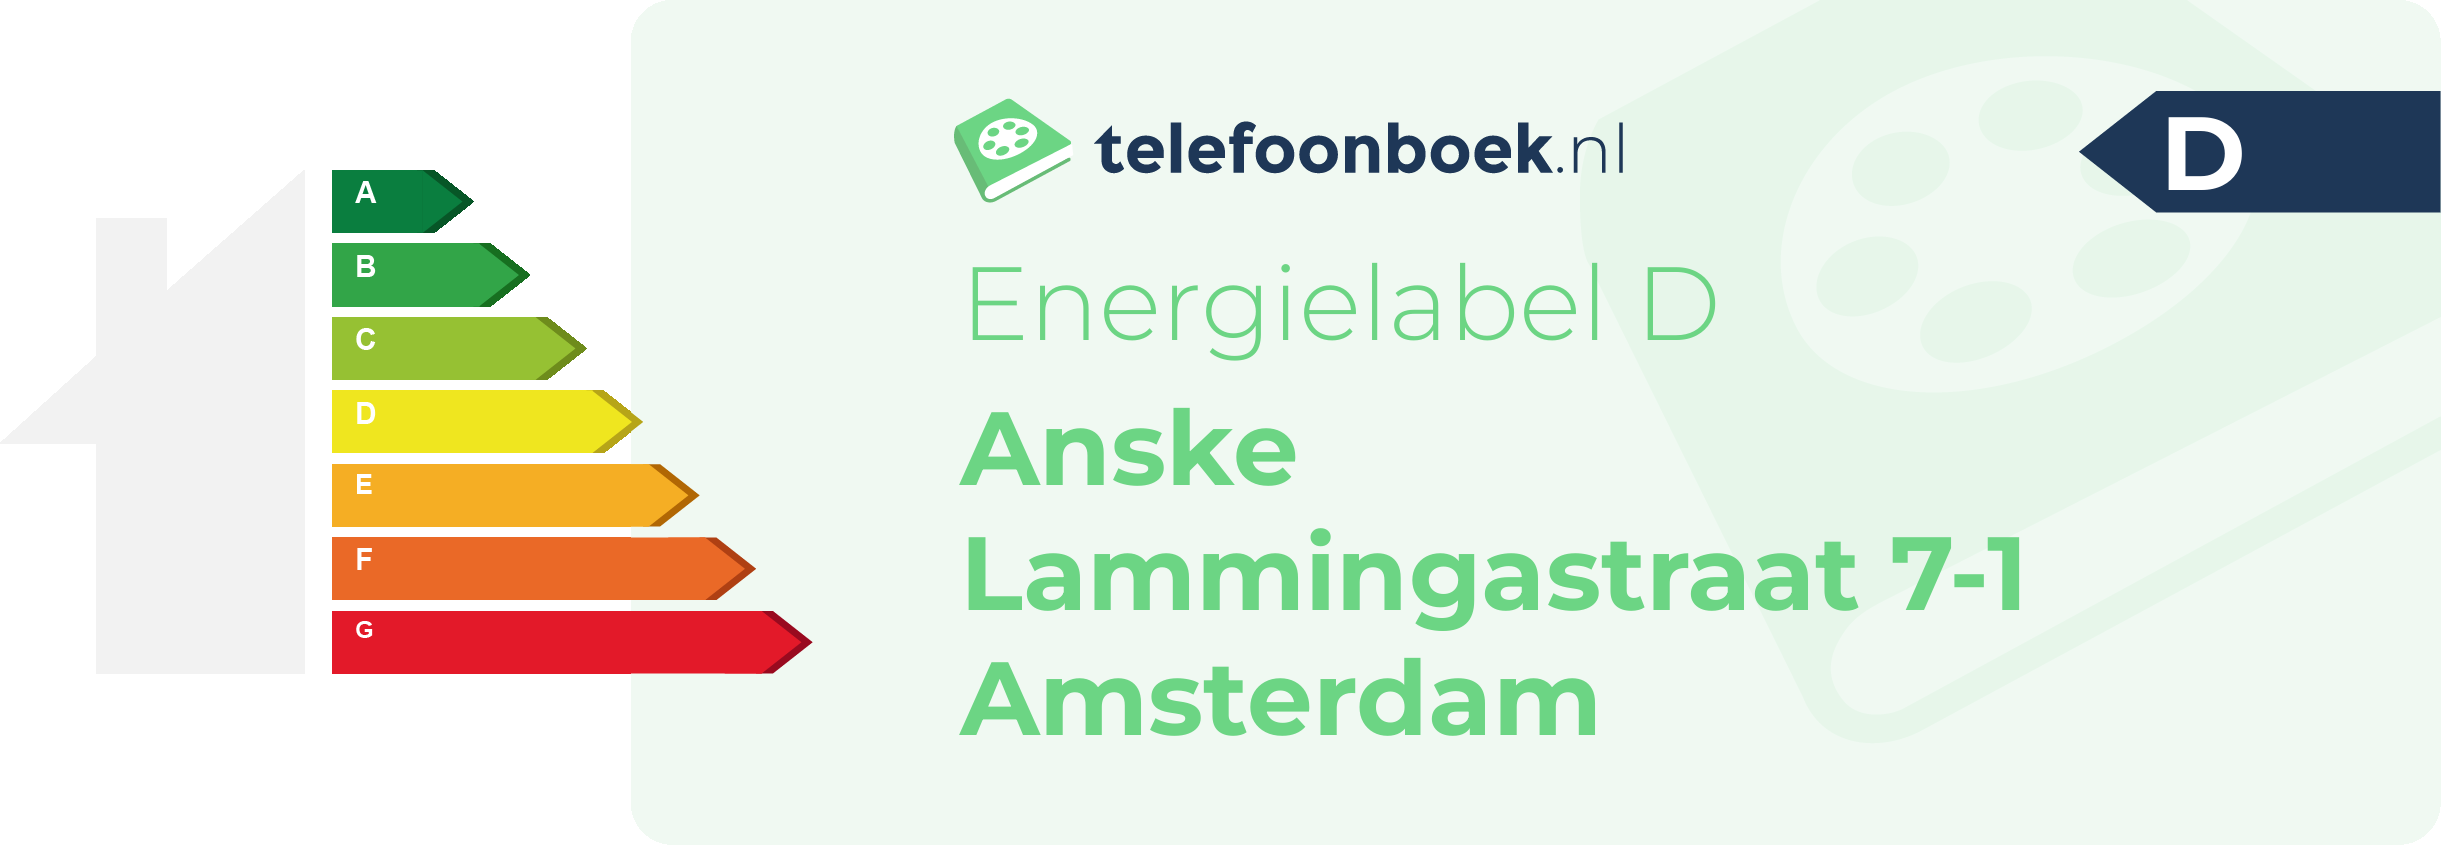 Energielabel Anske Lammingastraat 7-1 Amsterdam